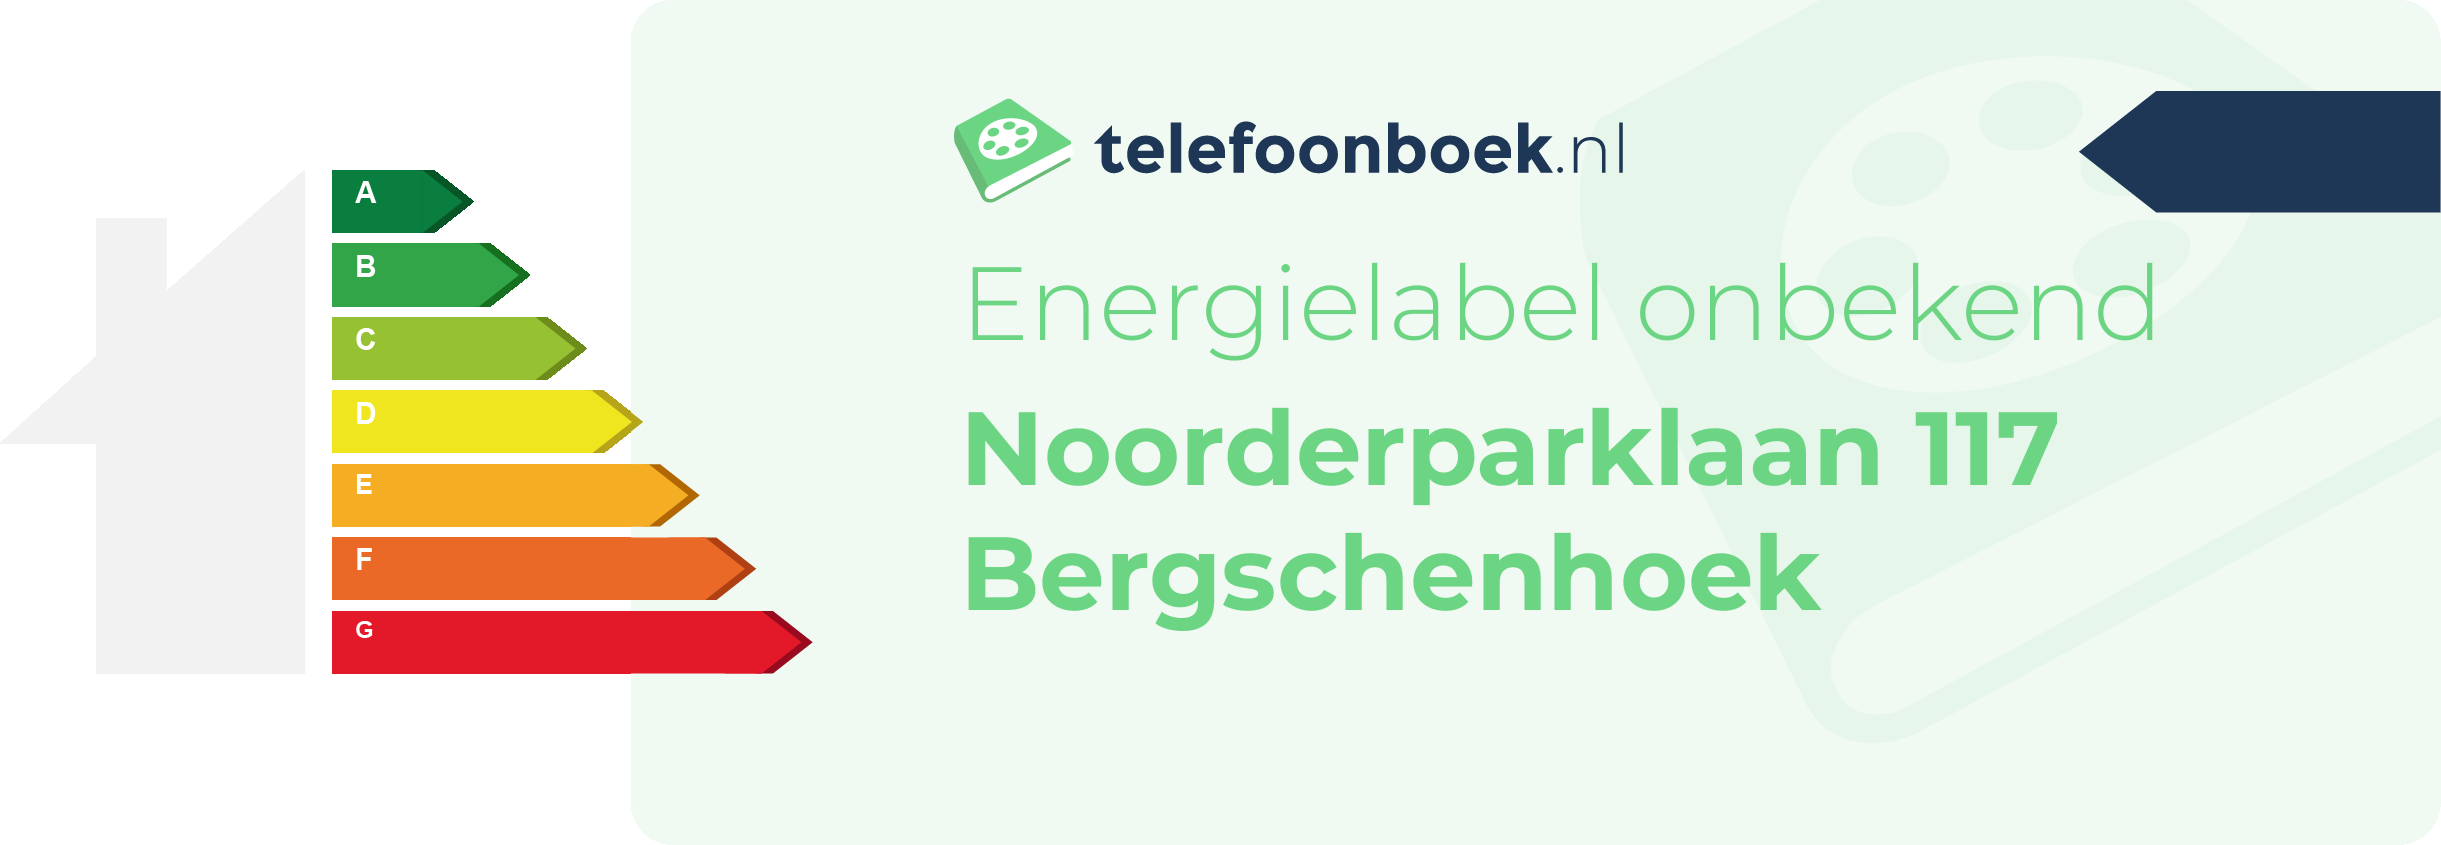 Energielabel Noorderparklaan 117 Bergschenhoek